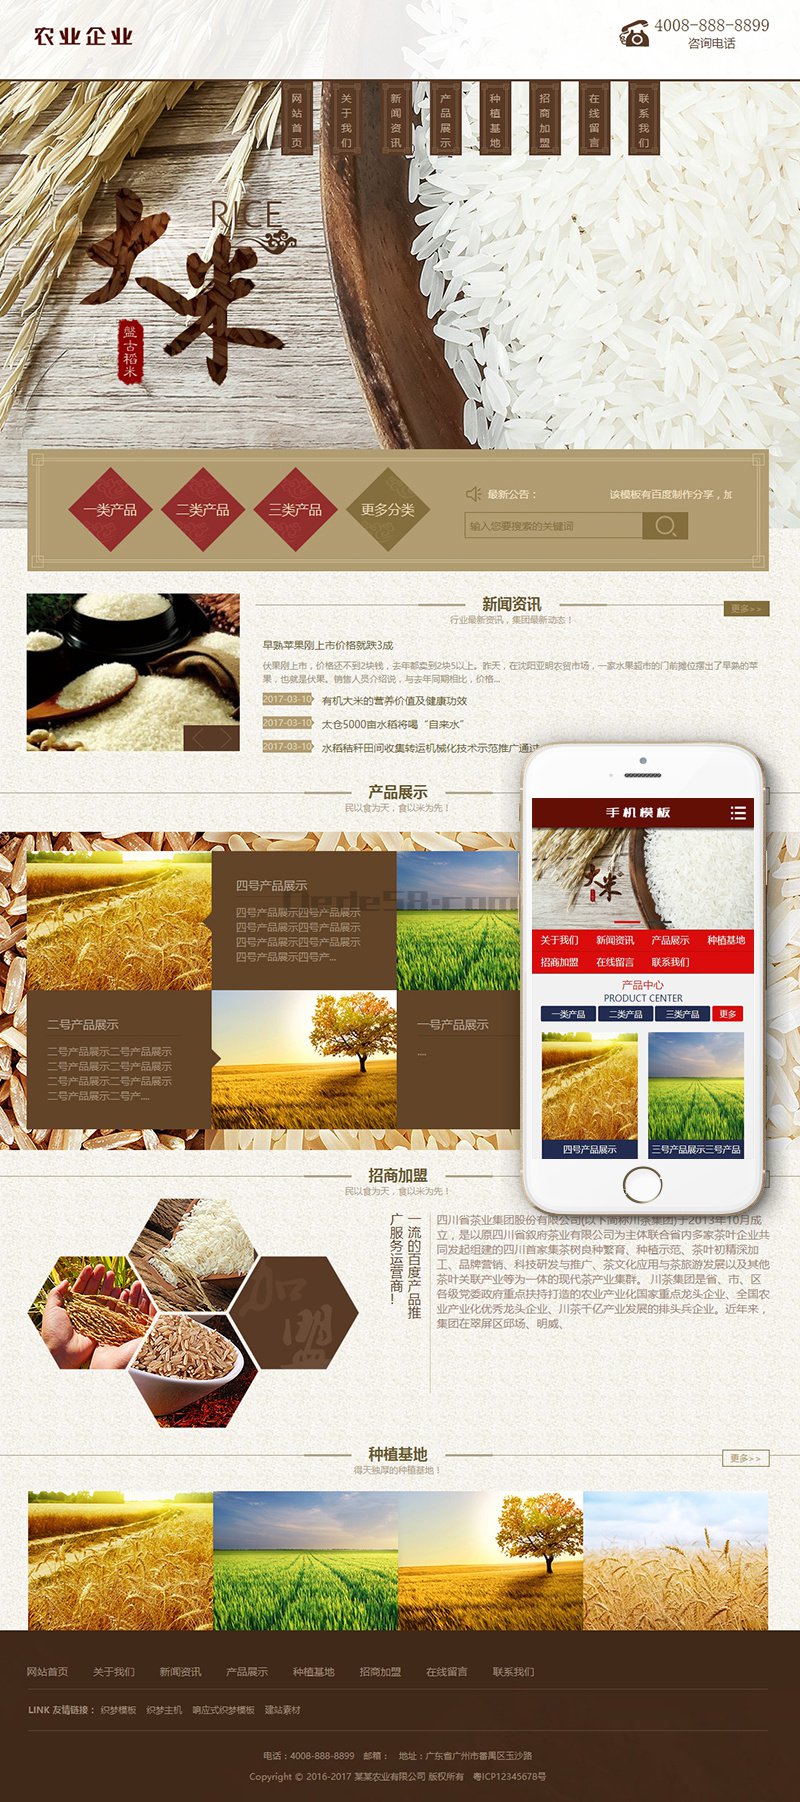 谷类大米农作物农业网站织梦模板(带手机端) 第1张